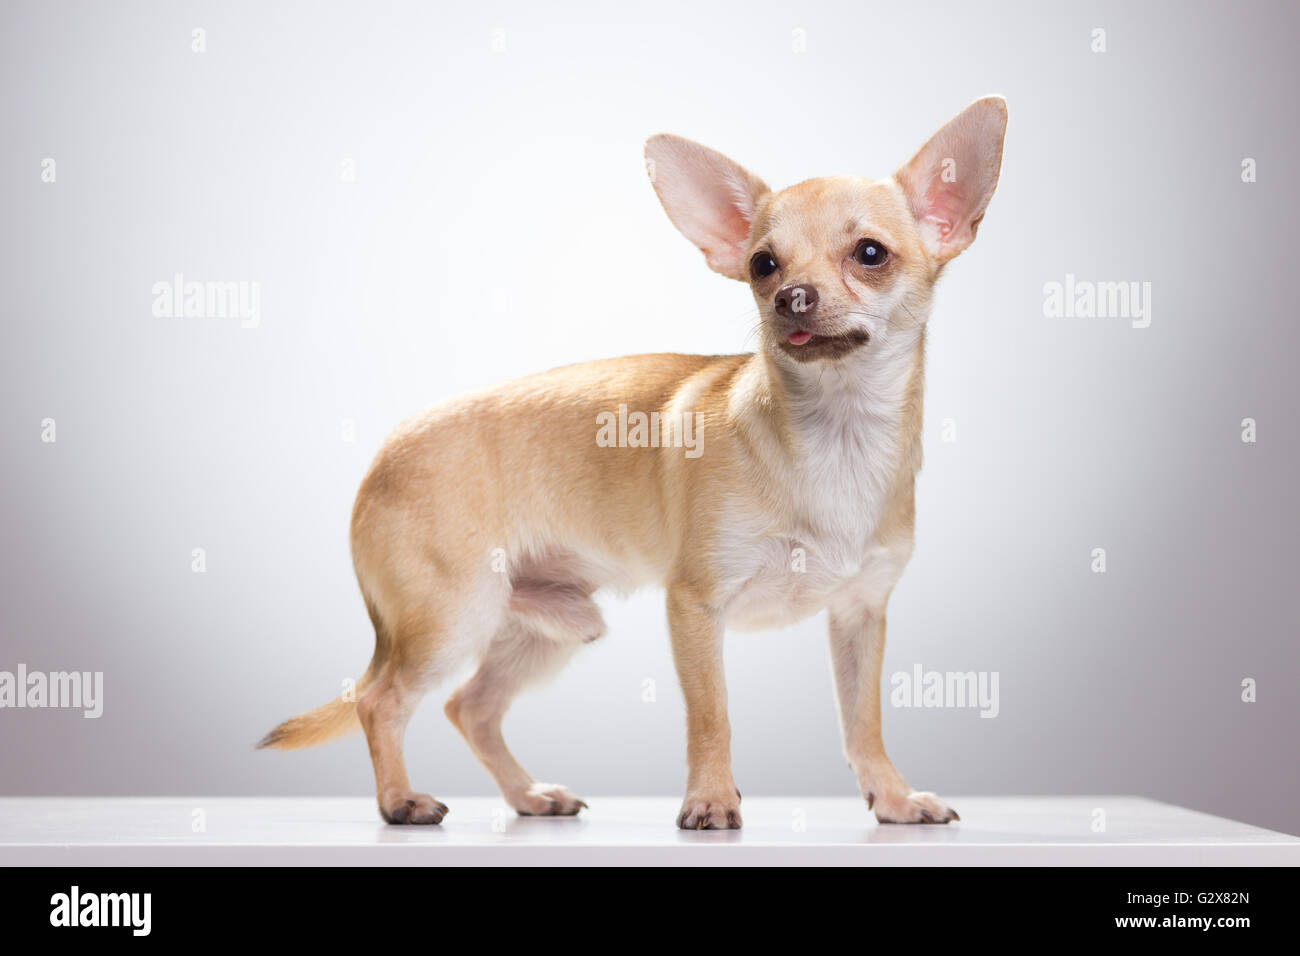 Chihuahua macho perro, fondo blanco. Foto de stock